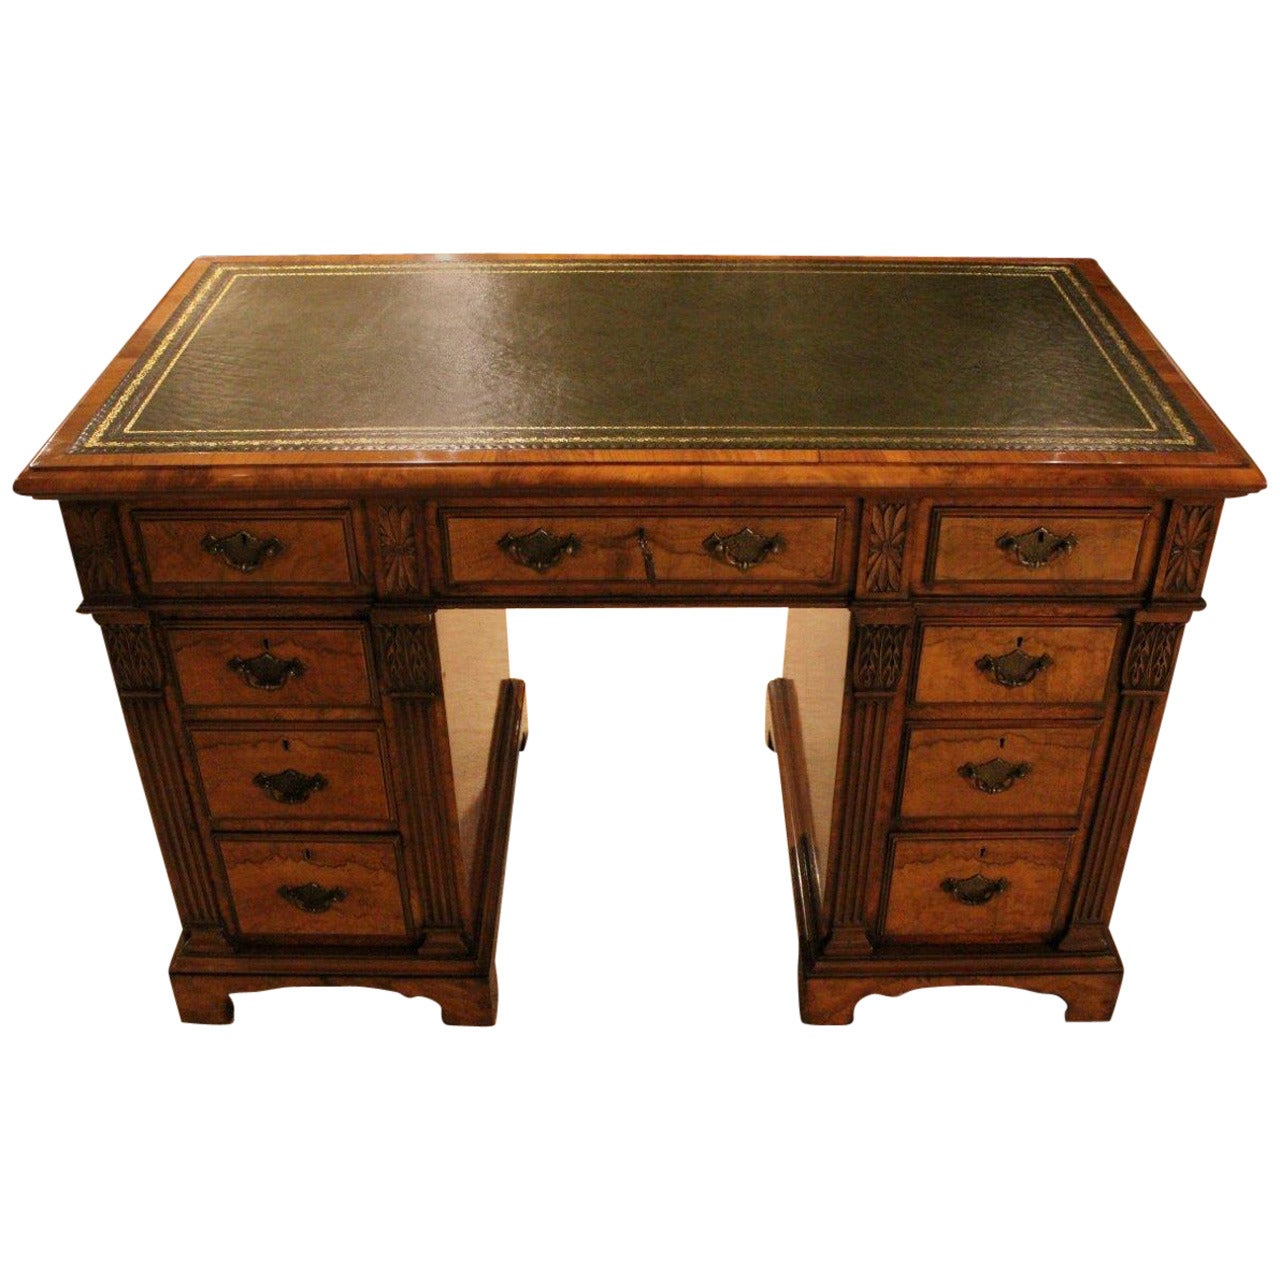 Beautiful Burr Walnut Late Victorian Period Antique Pedestal Desk